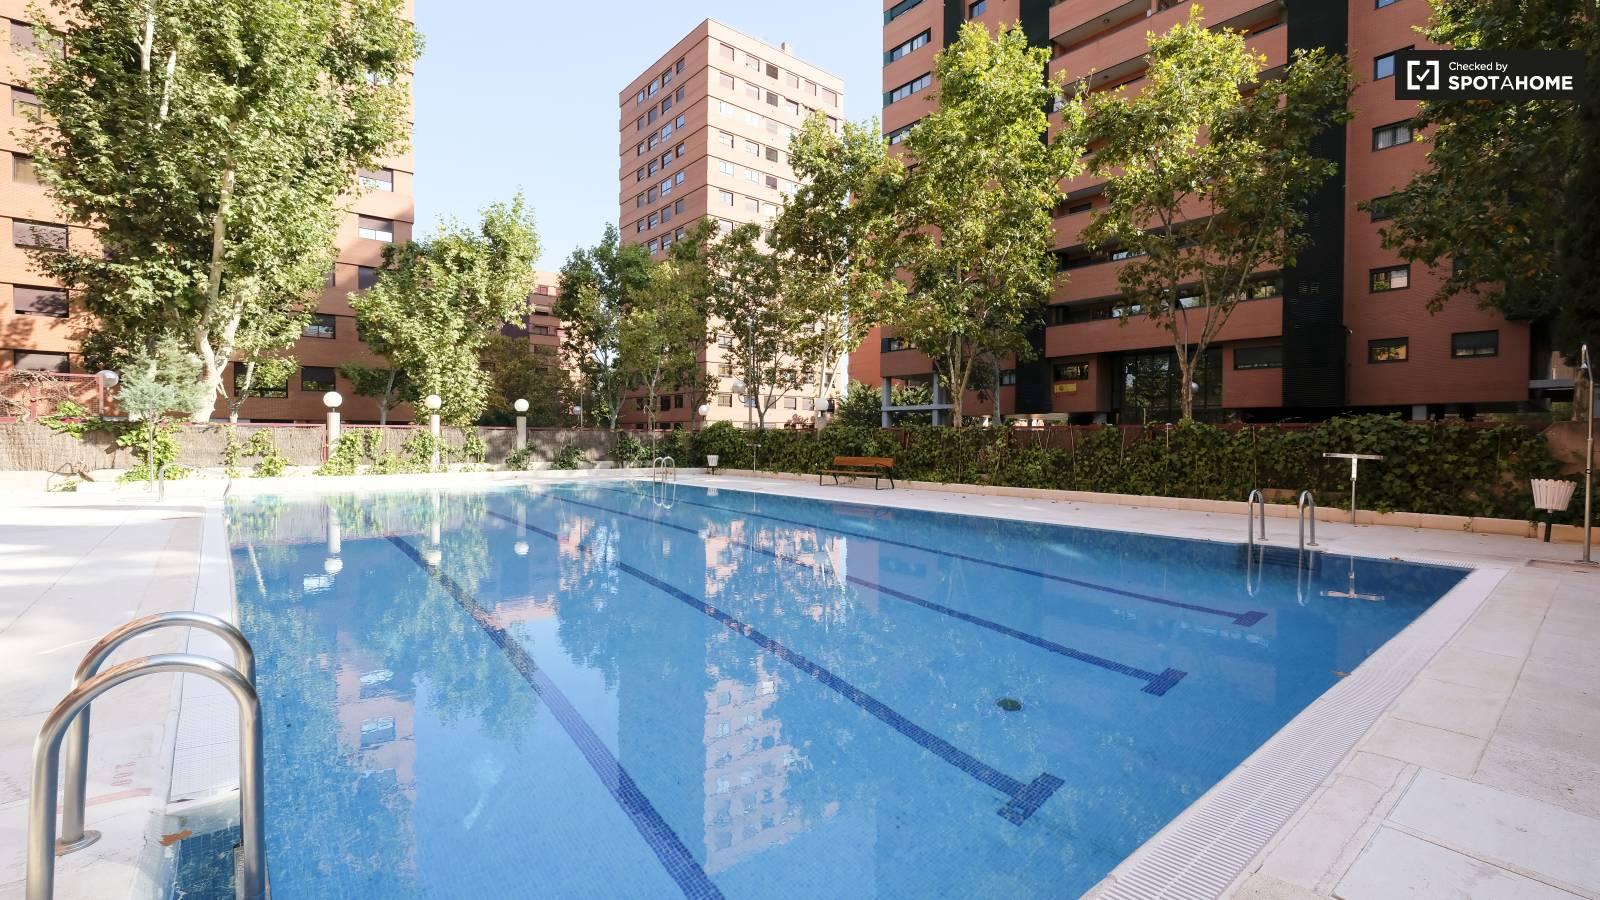 Piscina en un bloque de apartamentos en Madrid